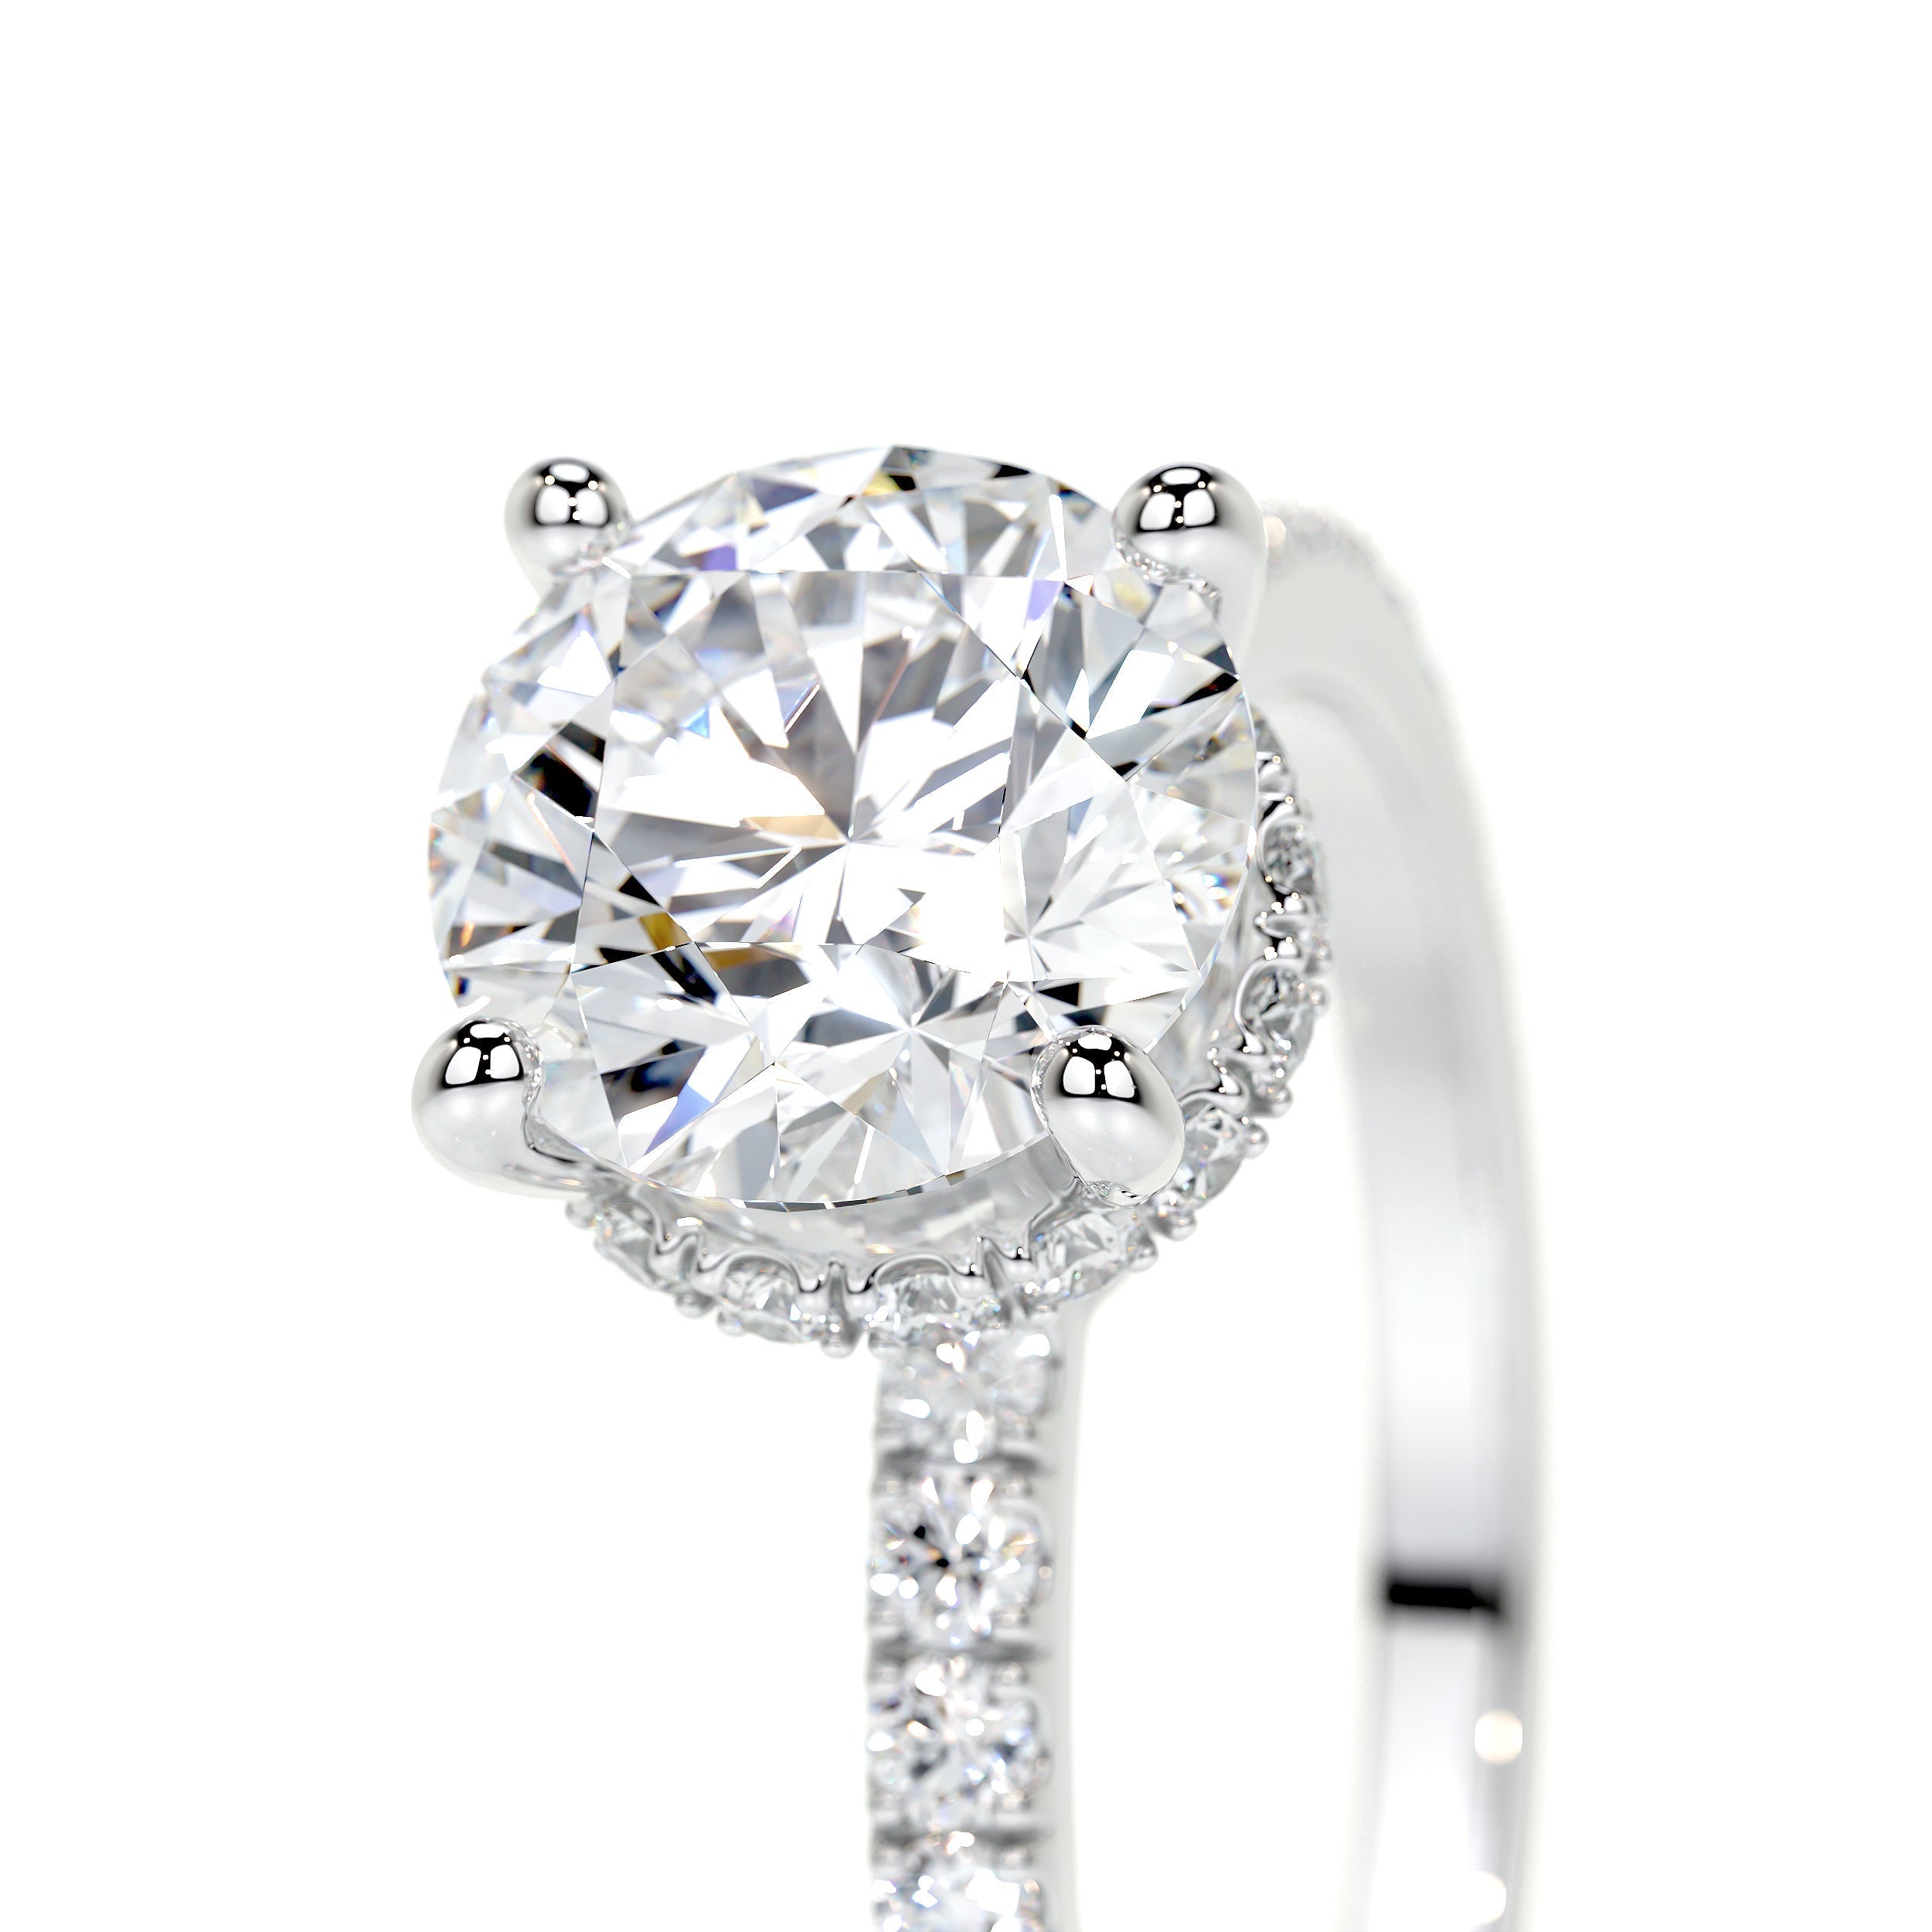 Vivienne Lab Grown Diamond Ring   (2 Carat) -14K White Gold (RTS)